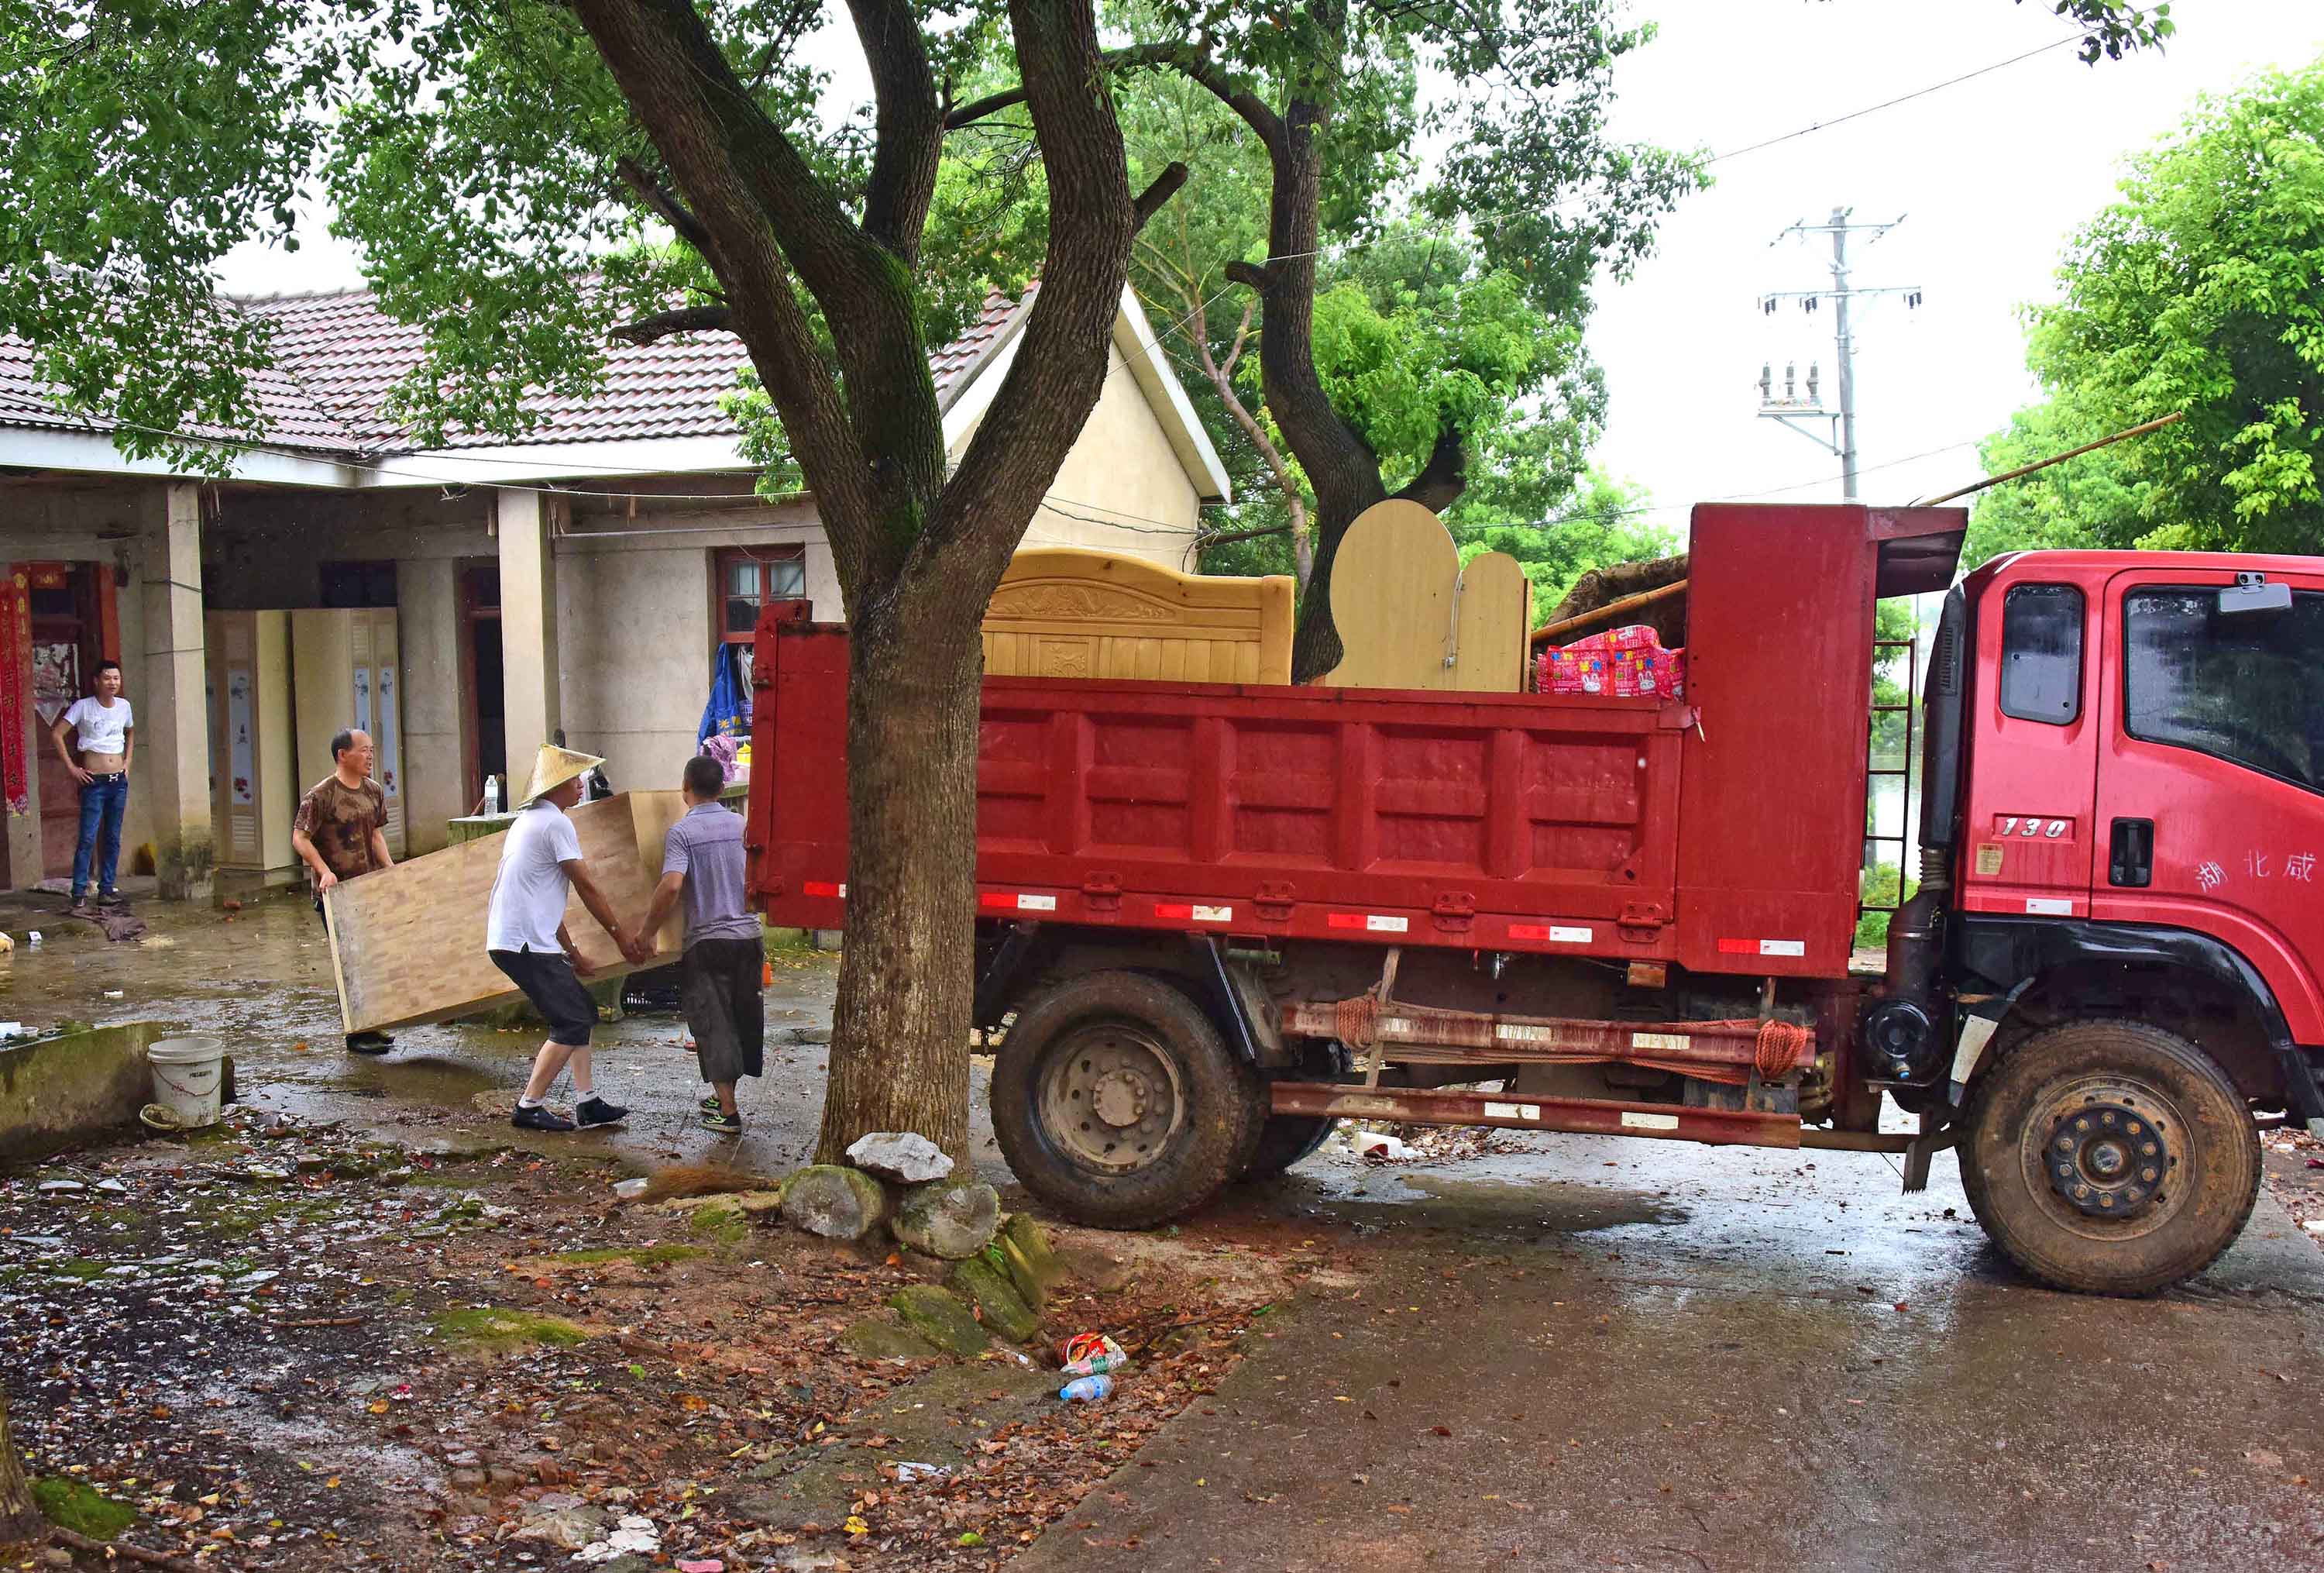 渔场工人在往卡车上搬家具。新华社记者 程敏 摄